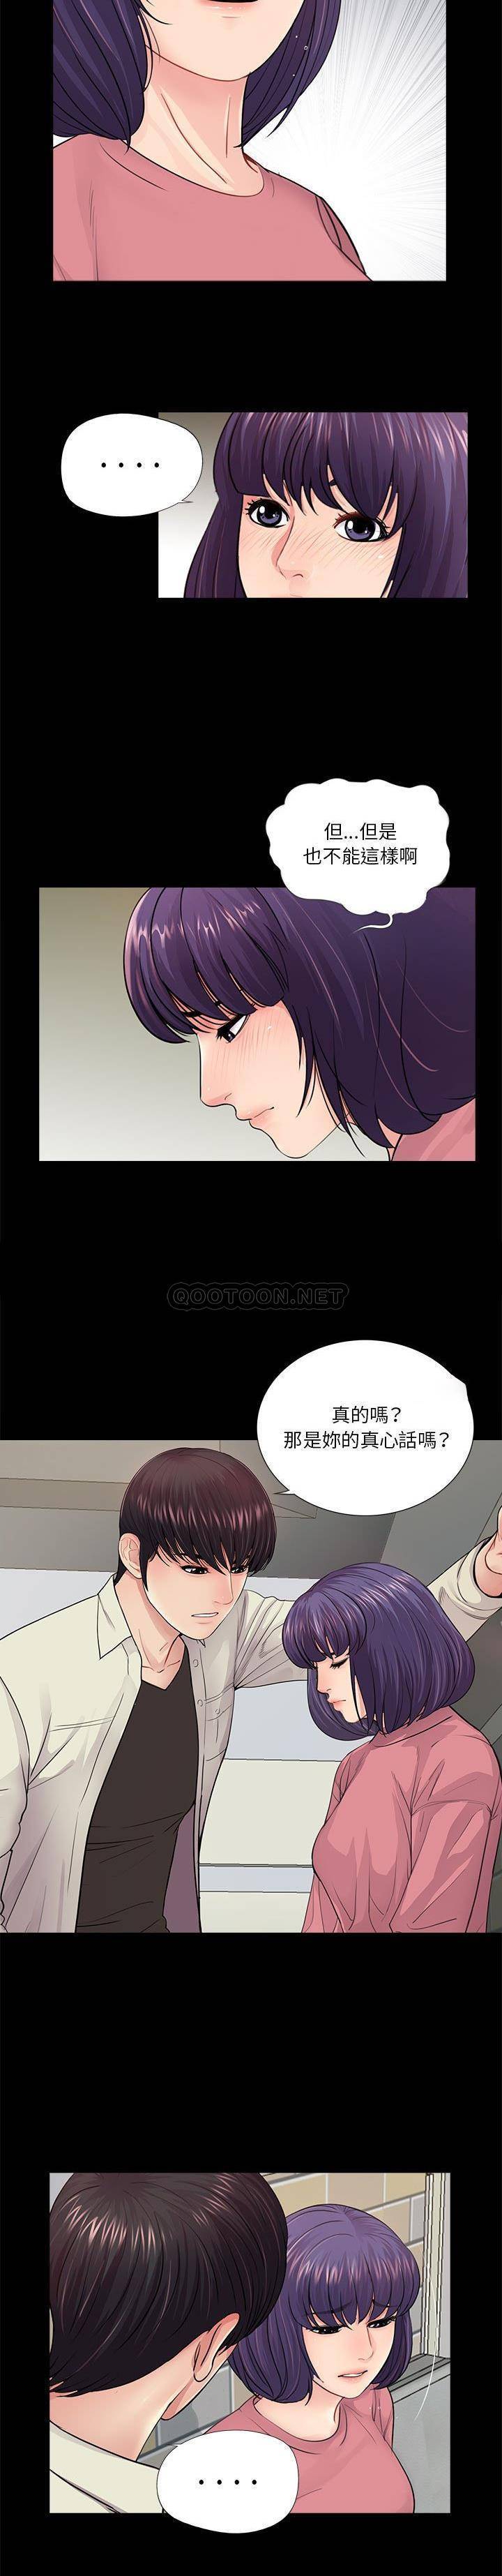 韩国污漫画 神秘復學生 第15话 4